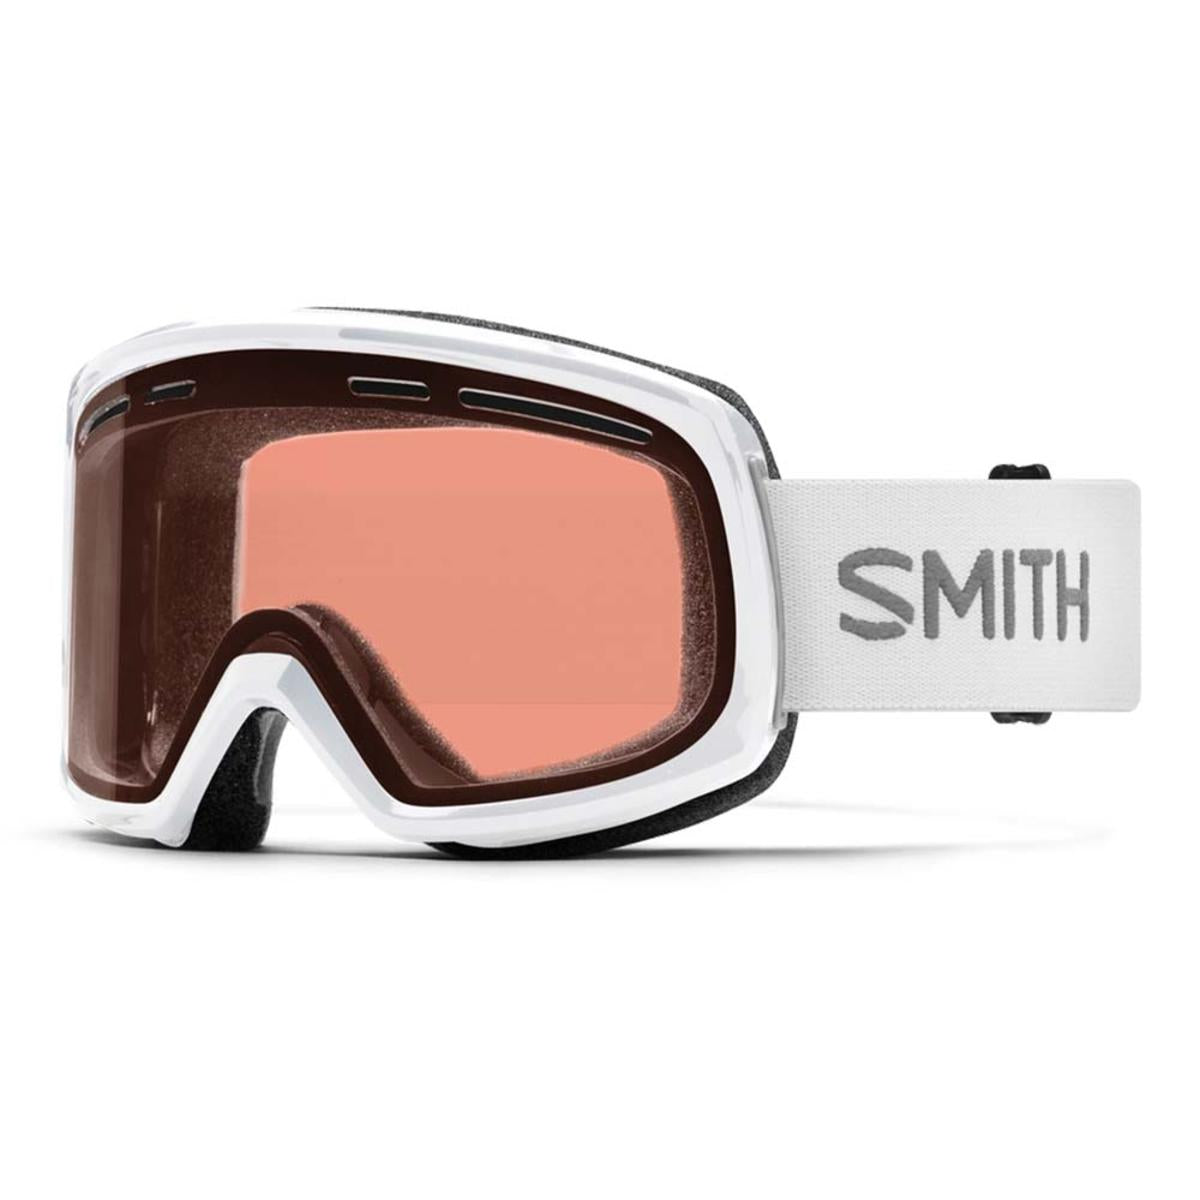 Smith Optics Range Goggles RC36 - White Frame